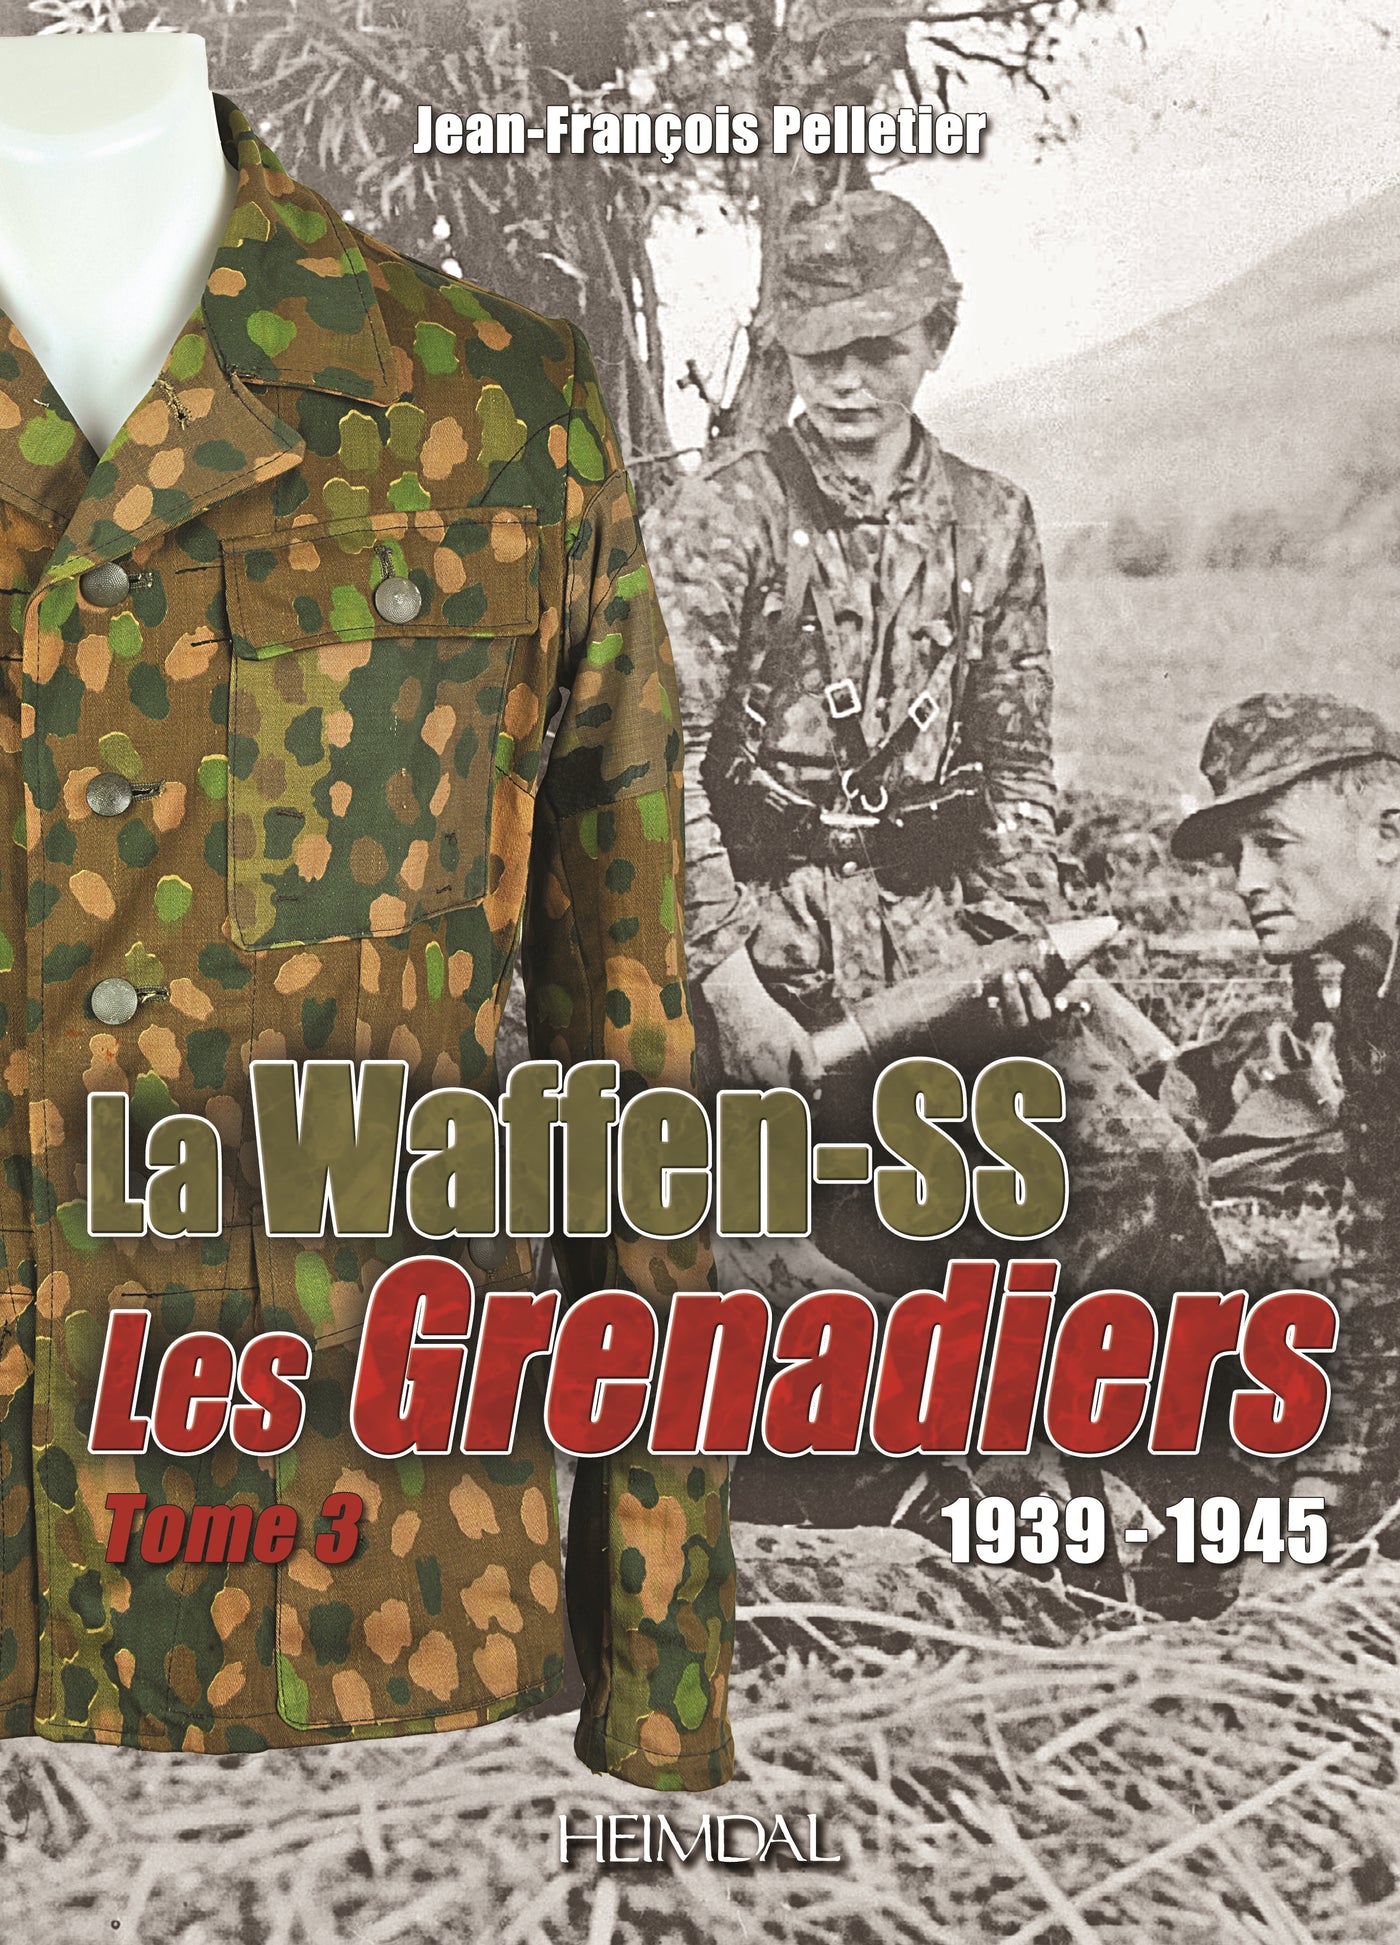 Grenadiere der Waffen-SS 